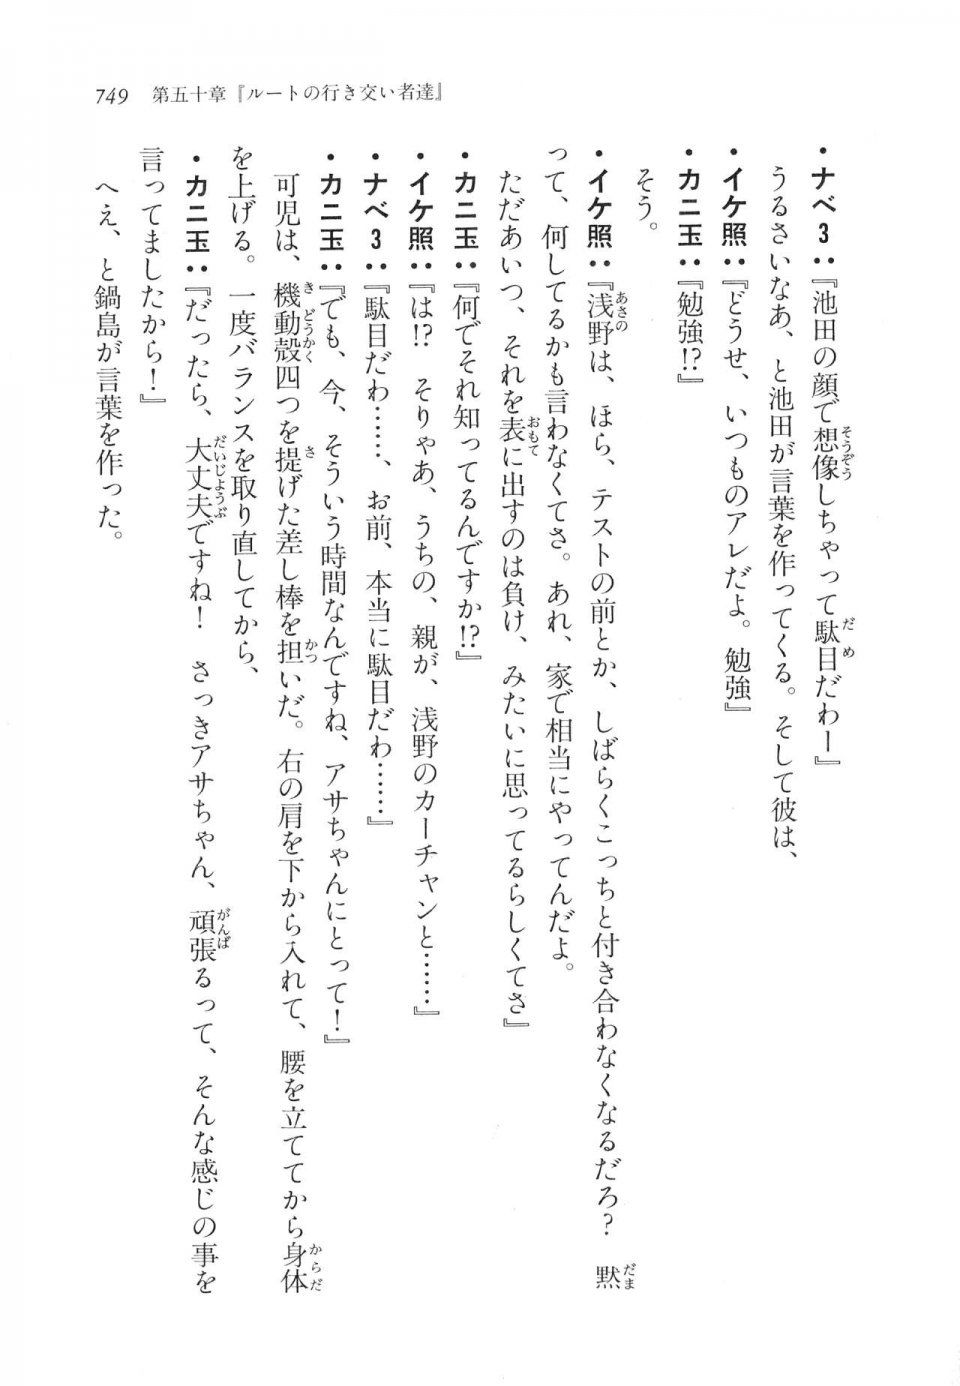 Kyoukai Senjou no Horizon LN Vol 17(7B) - Photo #751